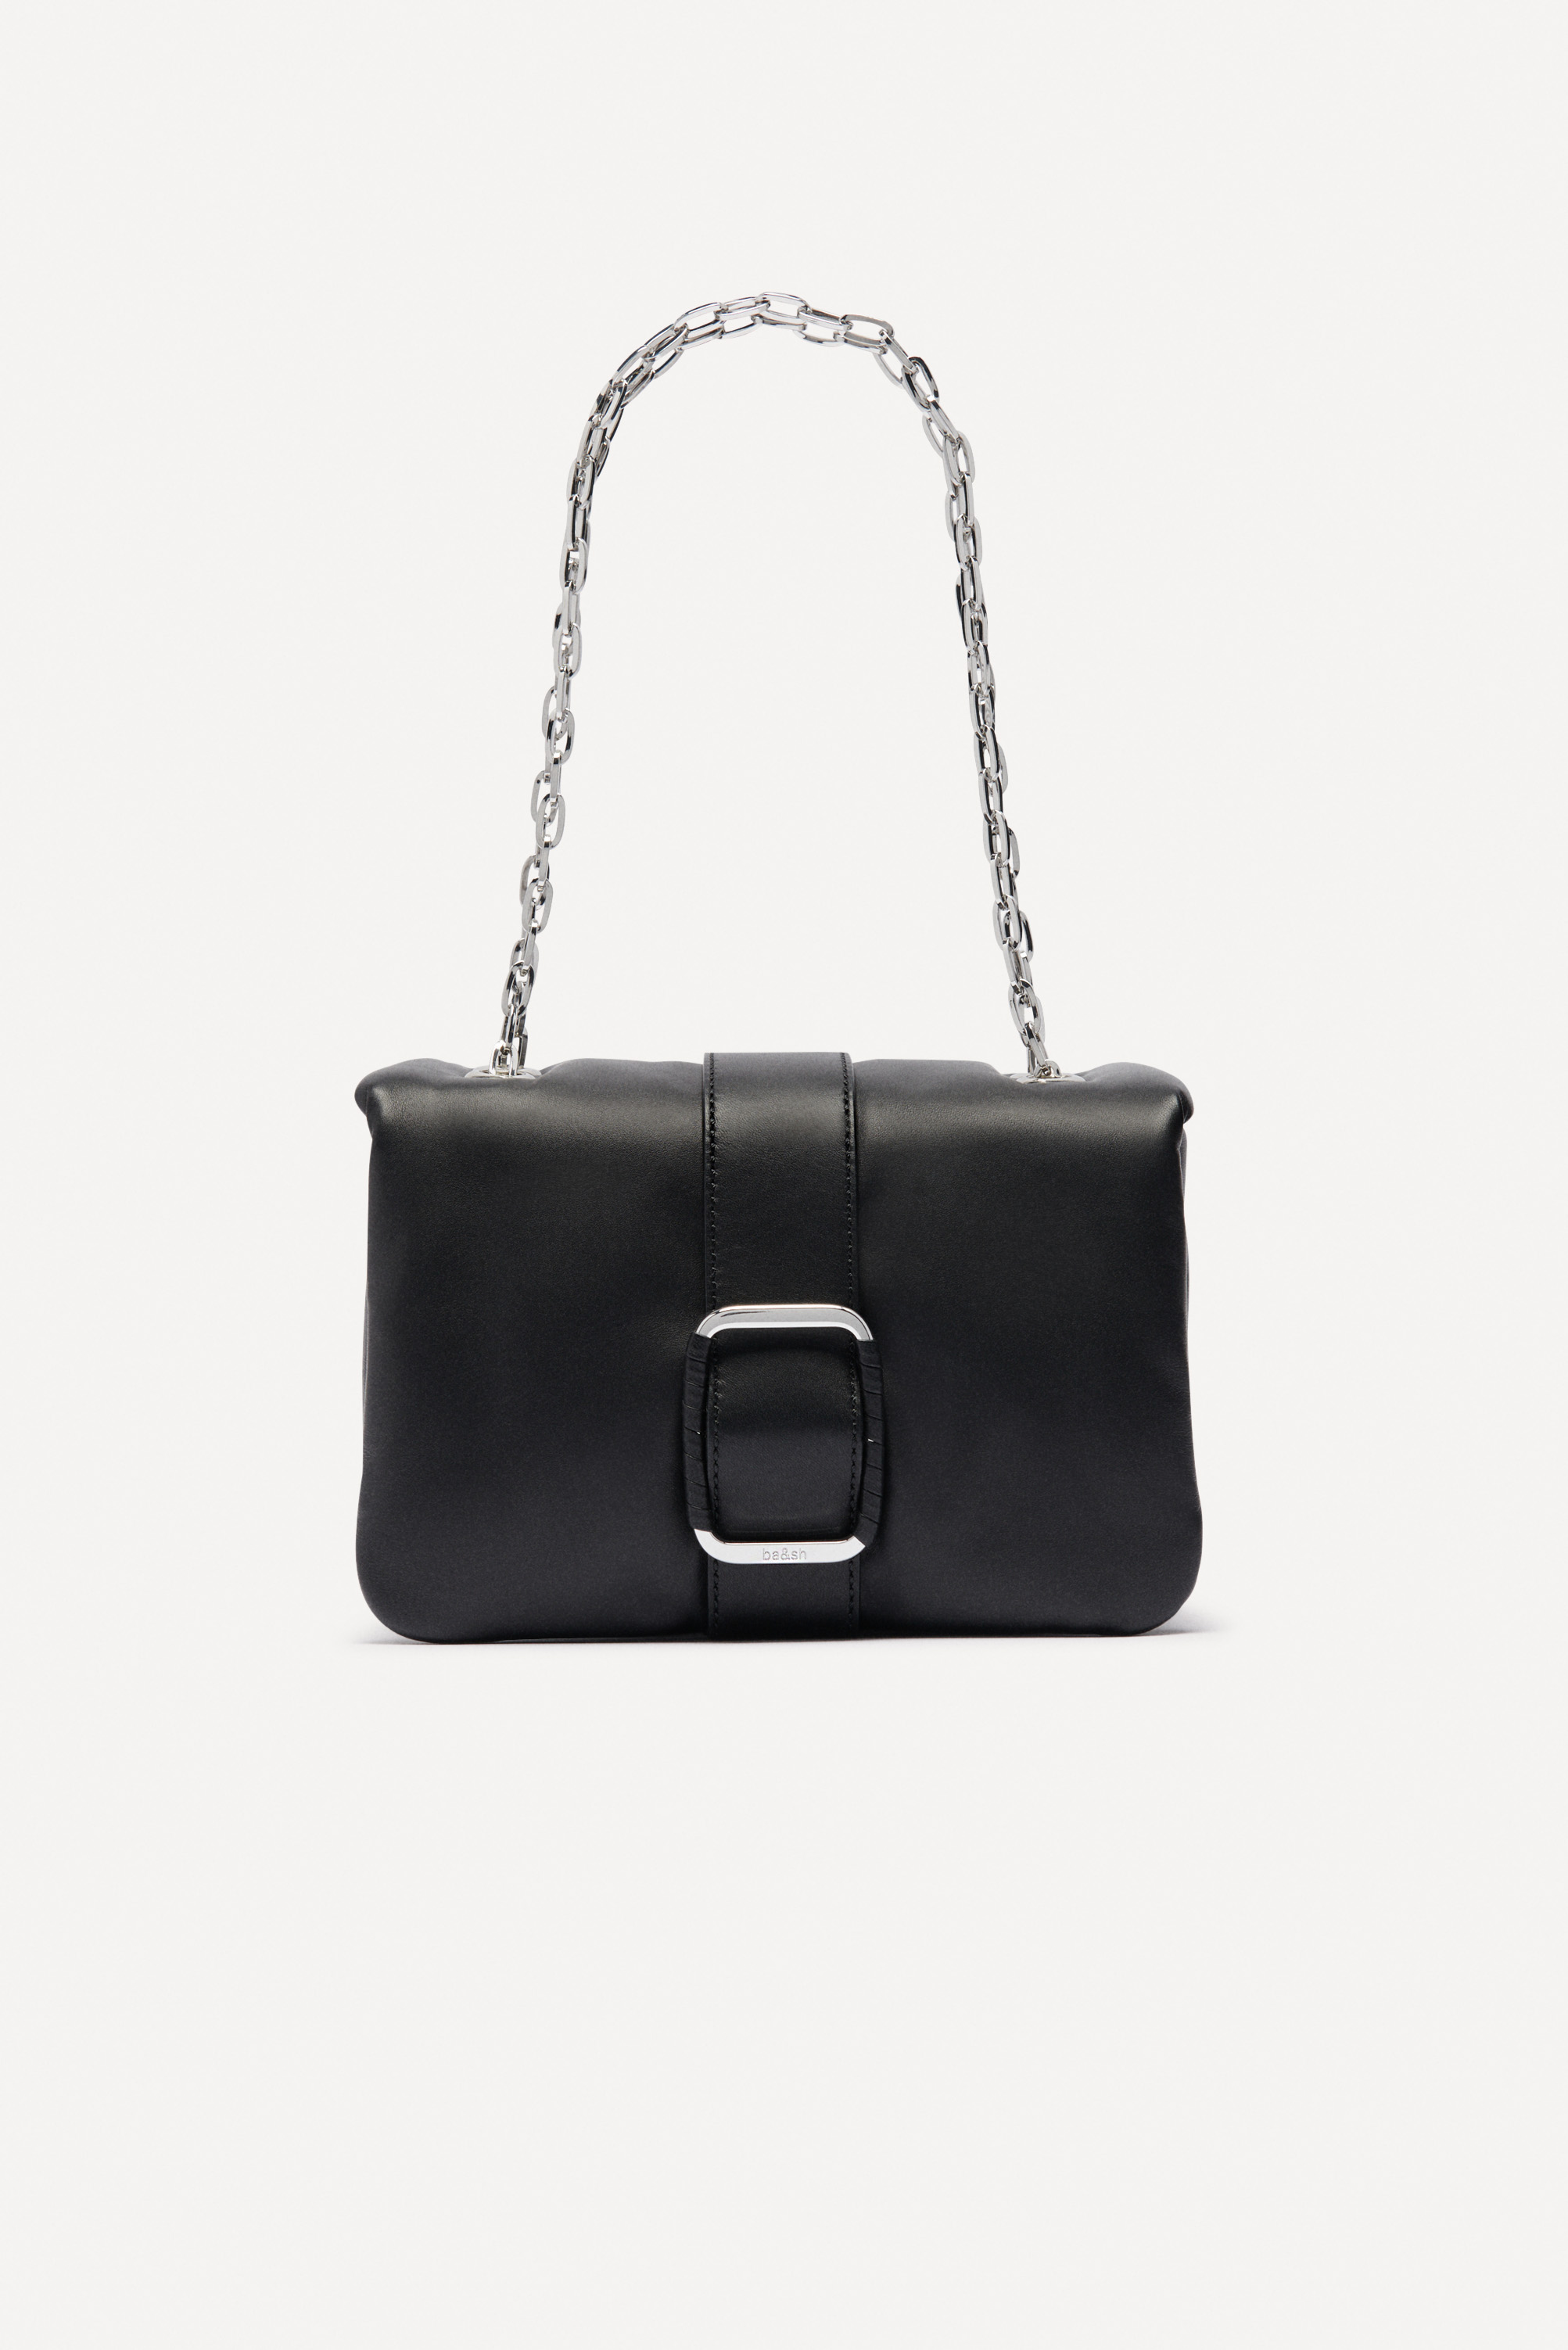 Dior Hardcore Vintage Black Jersey Handbag Bag With Crystals Chain